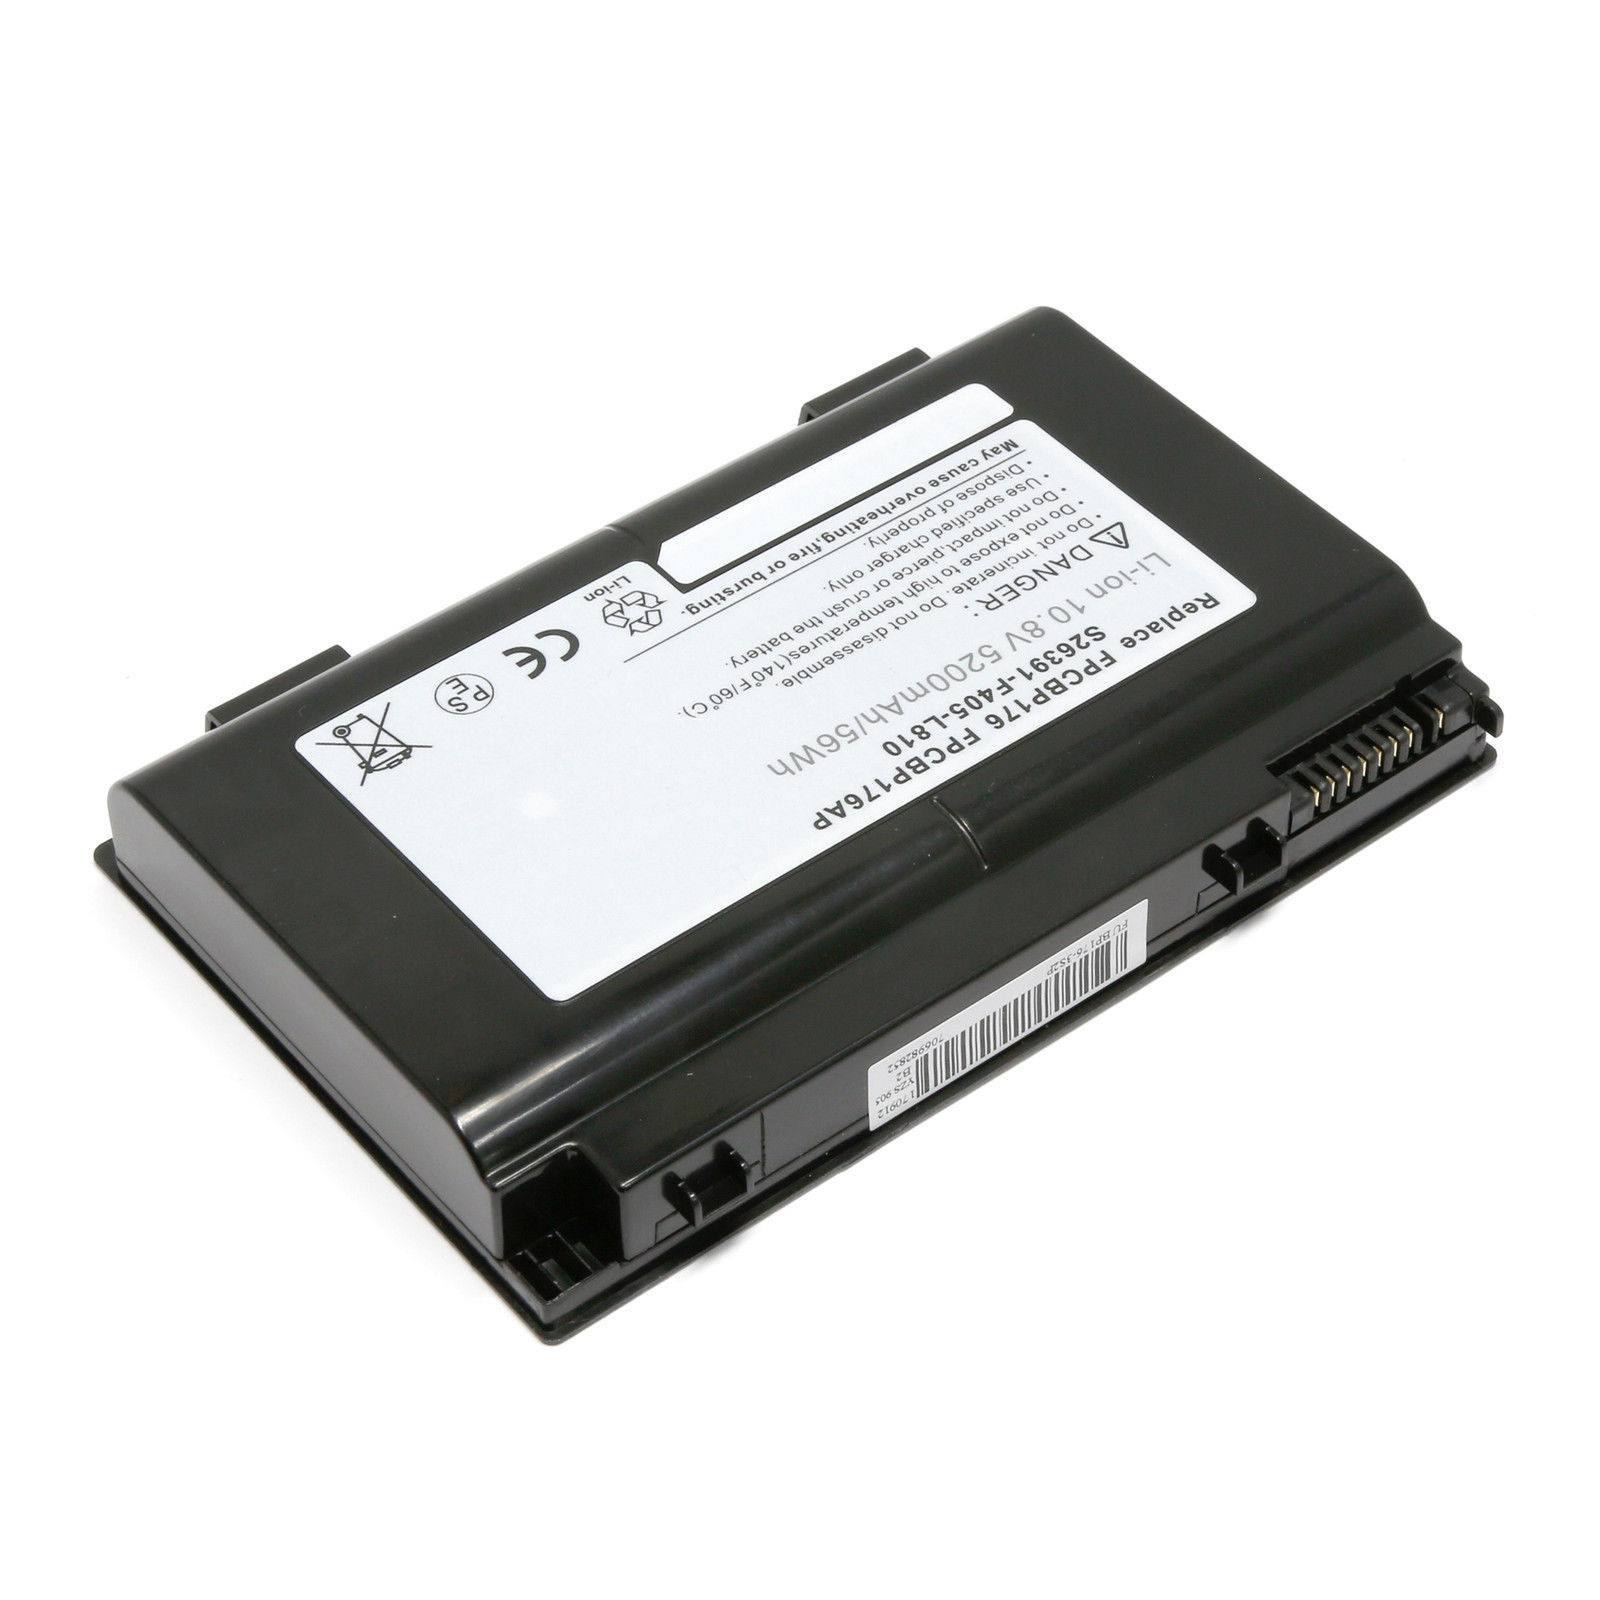 μπαταρία για Fujitsu Celsius H710 H910 H700 LifeBook A1220 AH550 A6210 N7010 A6230 συμβιβάσιμος